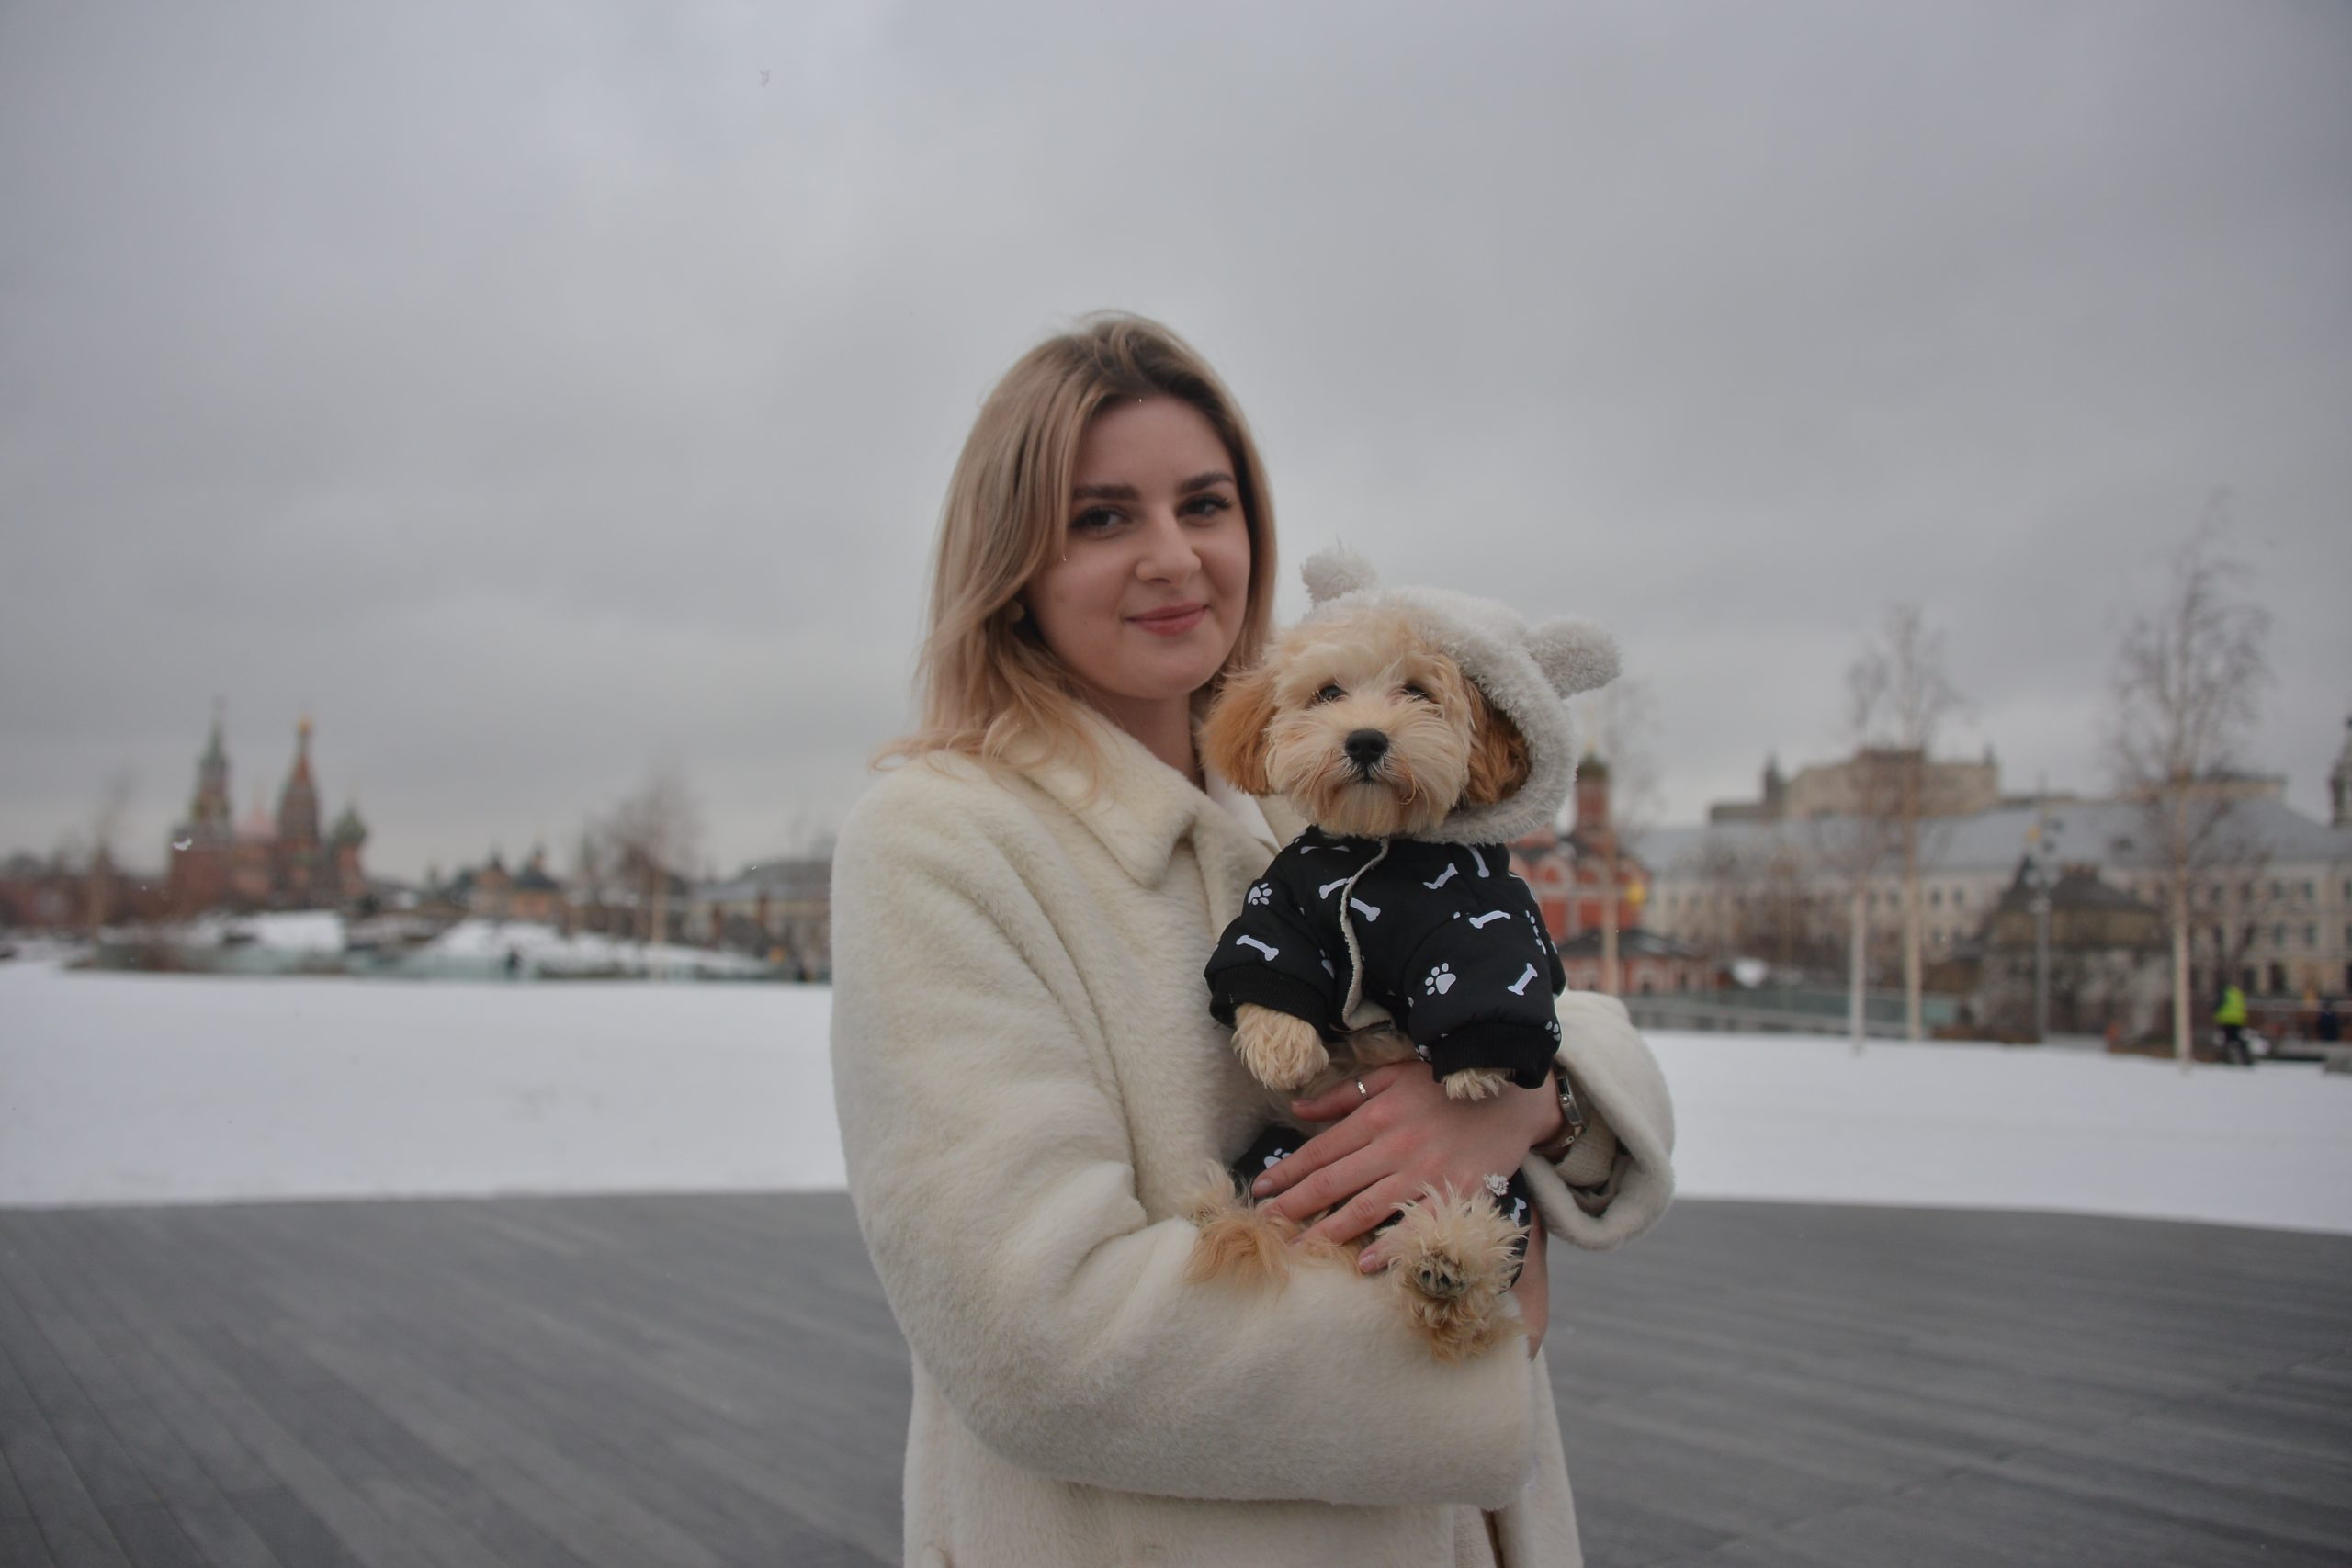 25 марта. Анна Лоскутова с любимицей Ютой часто гуляет по центру Москвы. А гораздо интереснее это делать, когда знаешь историю